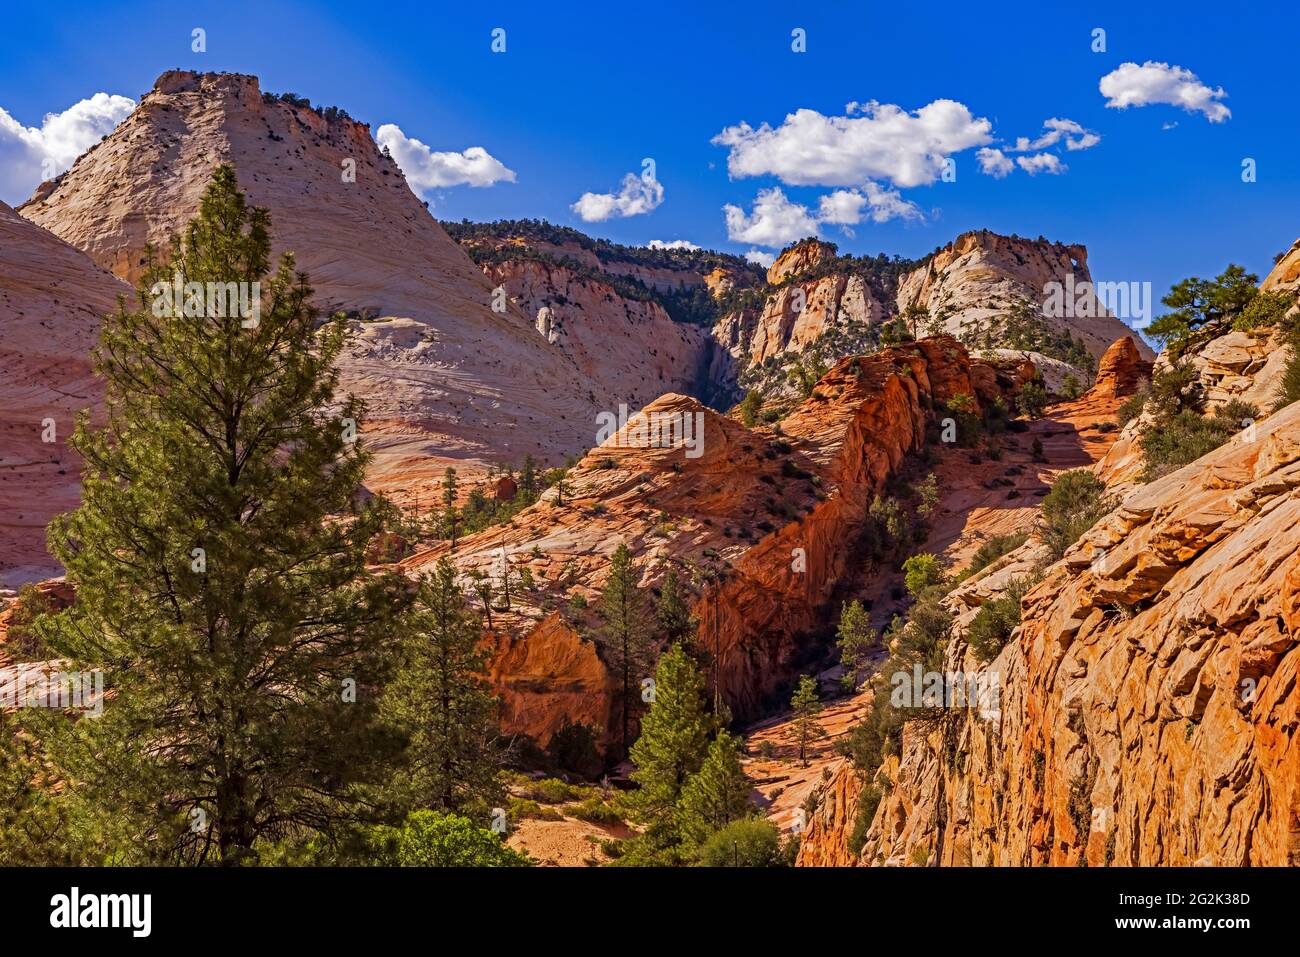 Dies ist Blick auf die spektakulären Farben der Canyon Wände entlang der State Route 9, der Zion-Mt. Carmel Scenic Drive im Zion National Park, Springdale, UT. Stockfoto